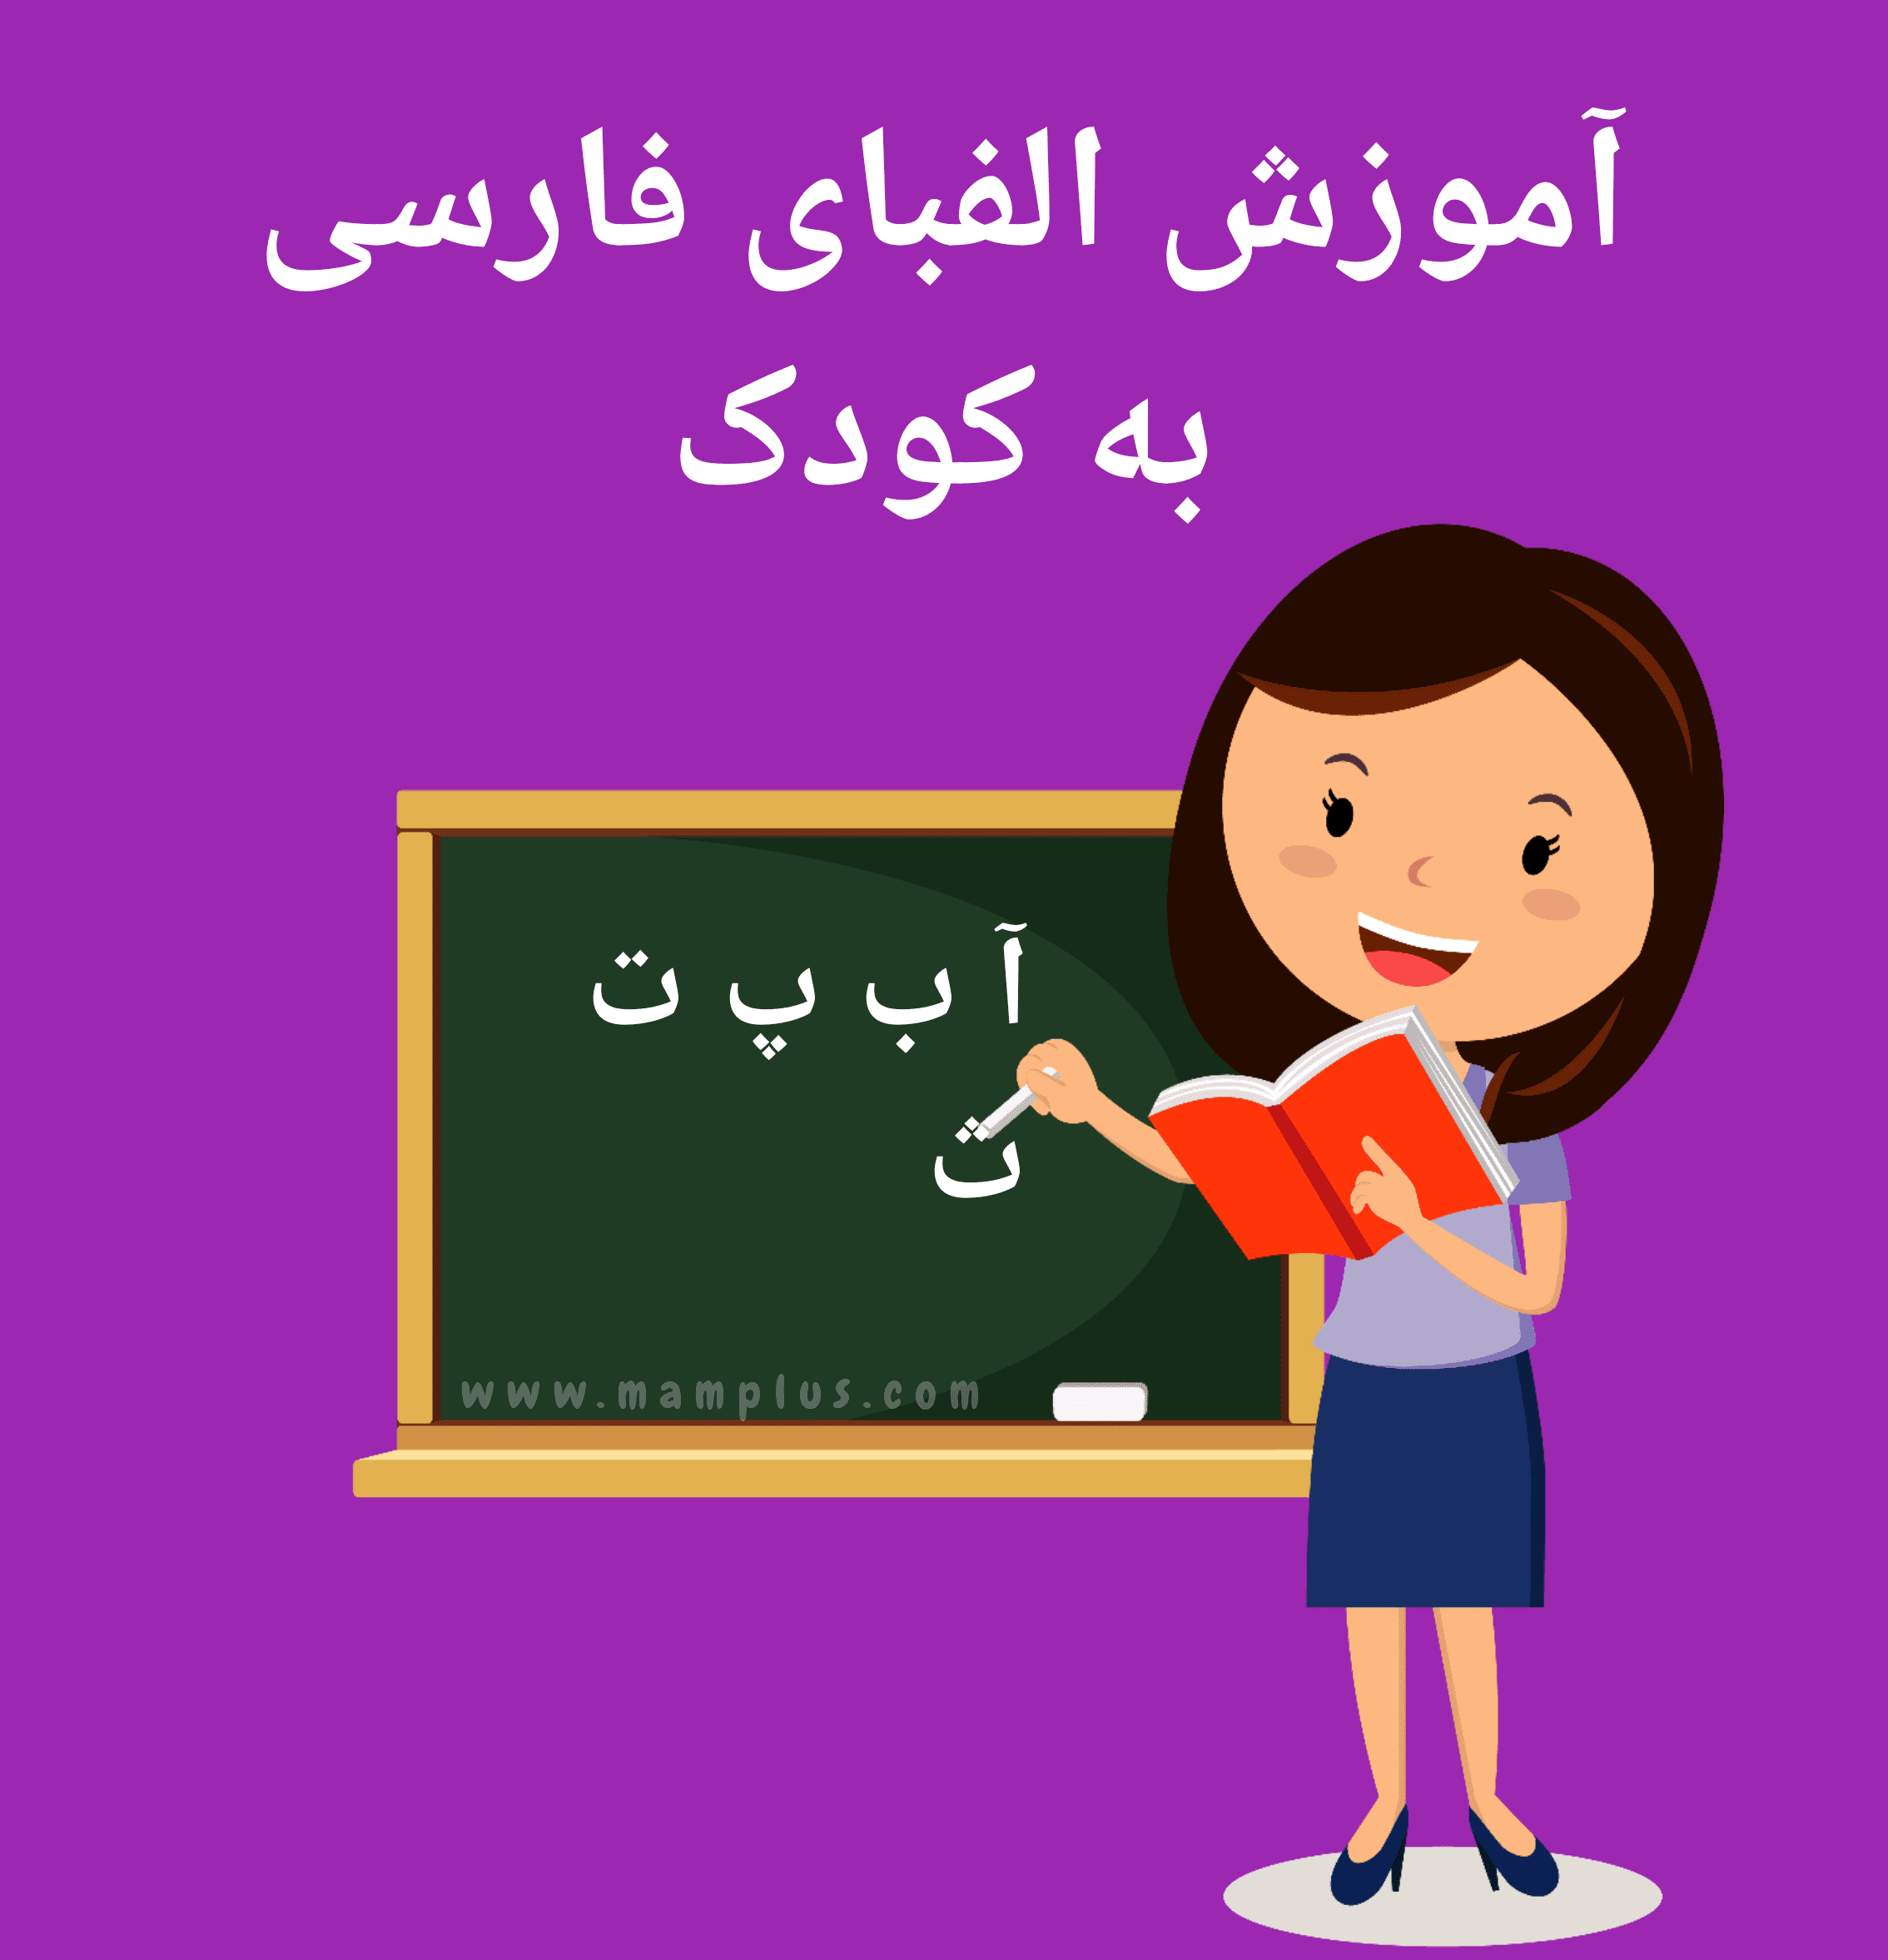 آموزش الفبای فارسی به کودک.png